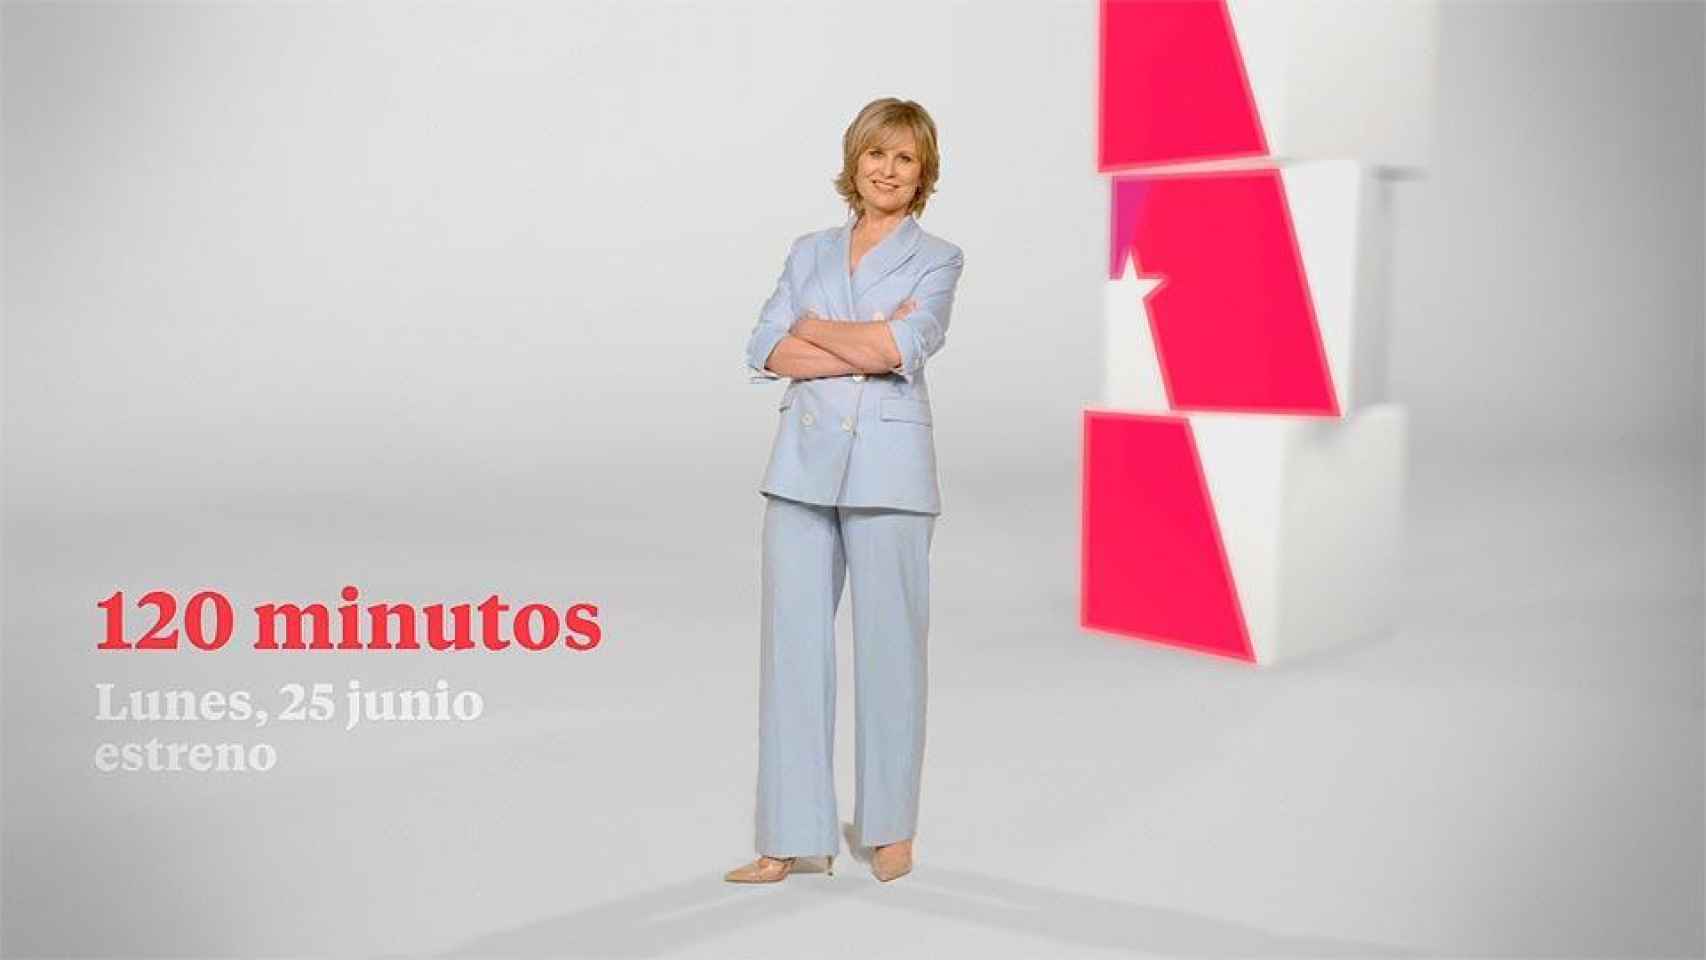 María Rey presenta '120 minutos' en Telemadrid desde junio de 2018.